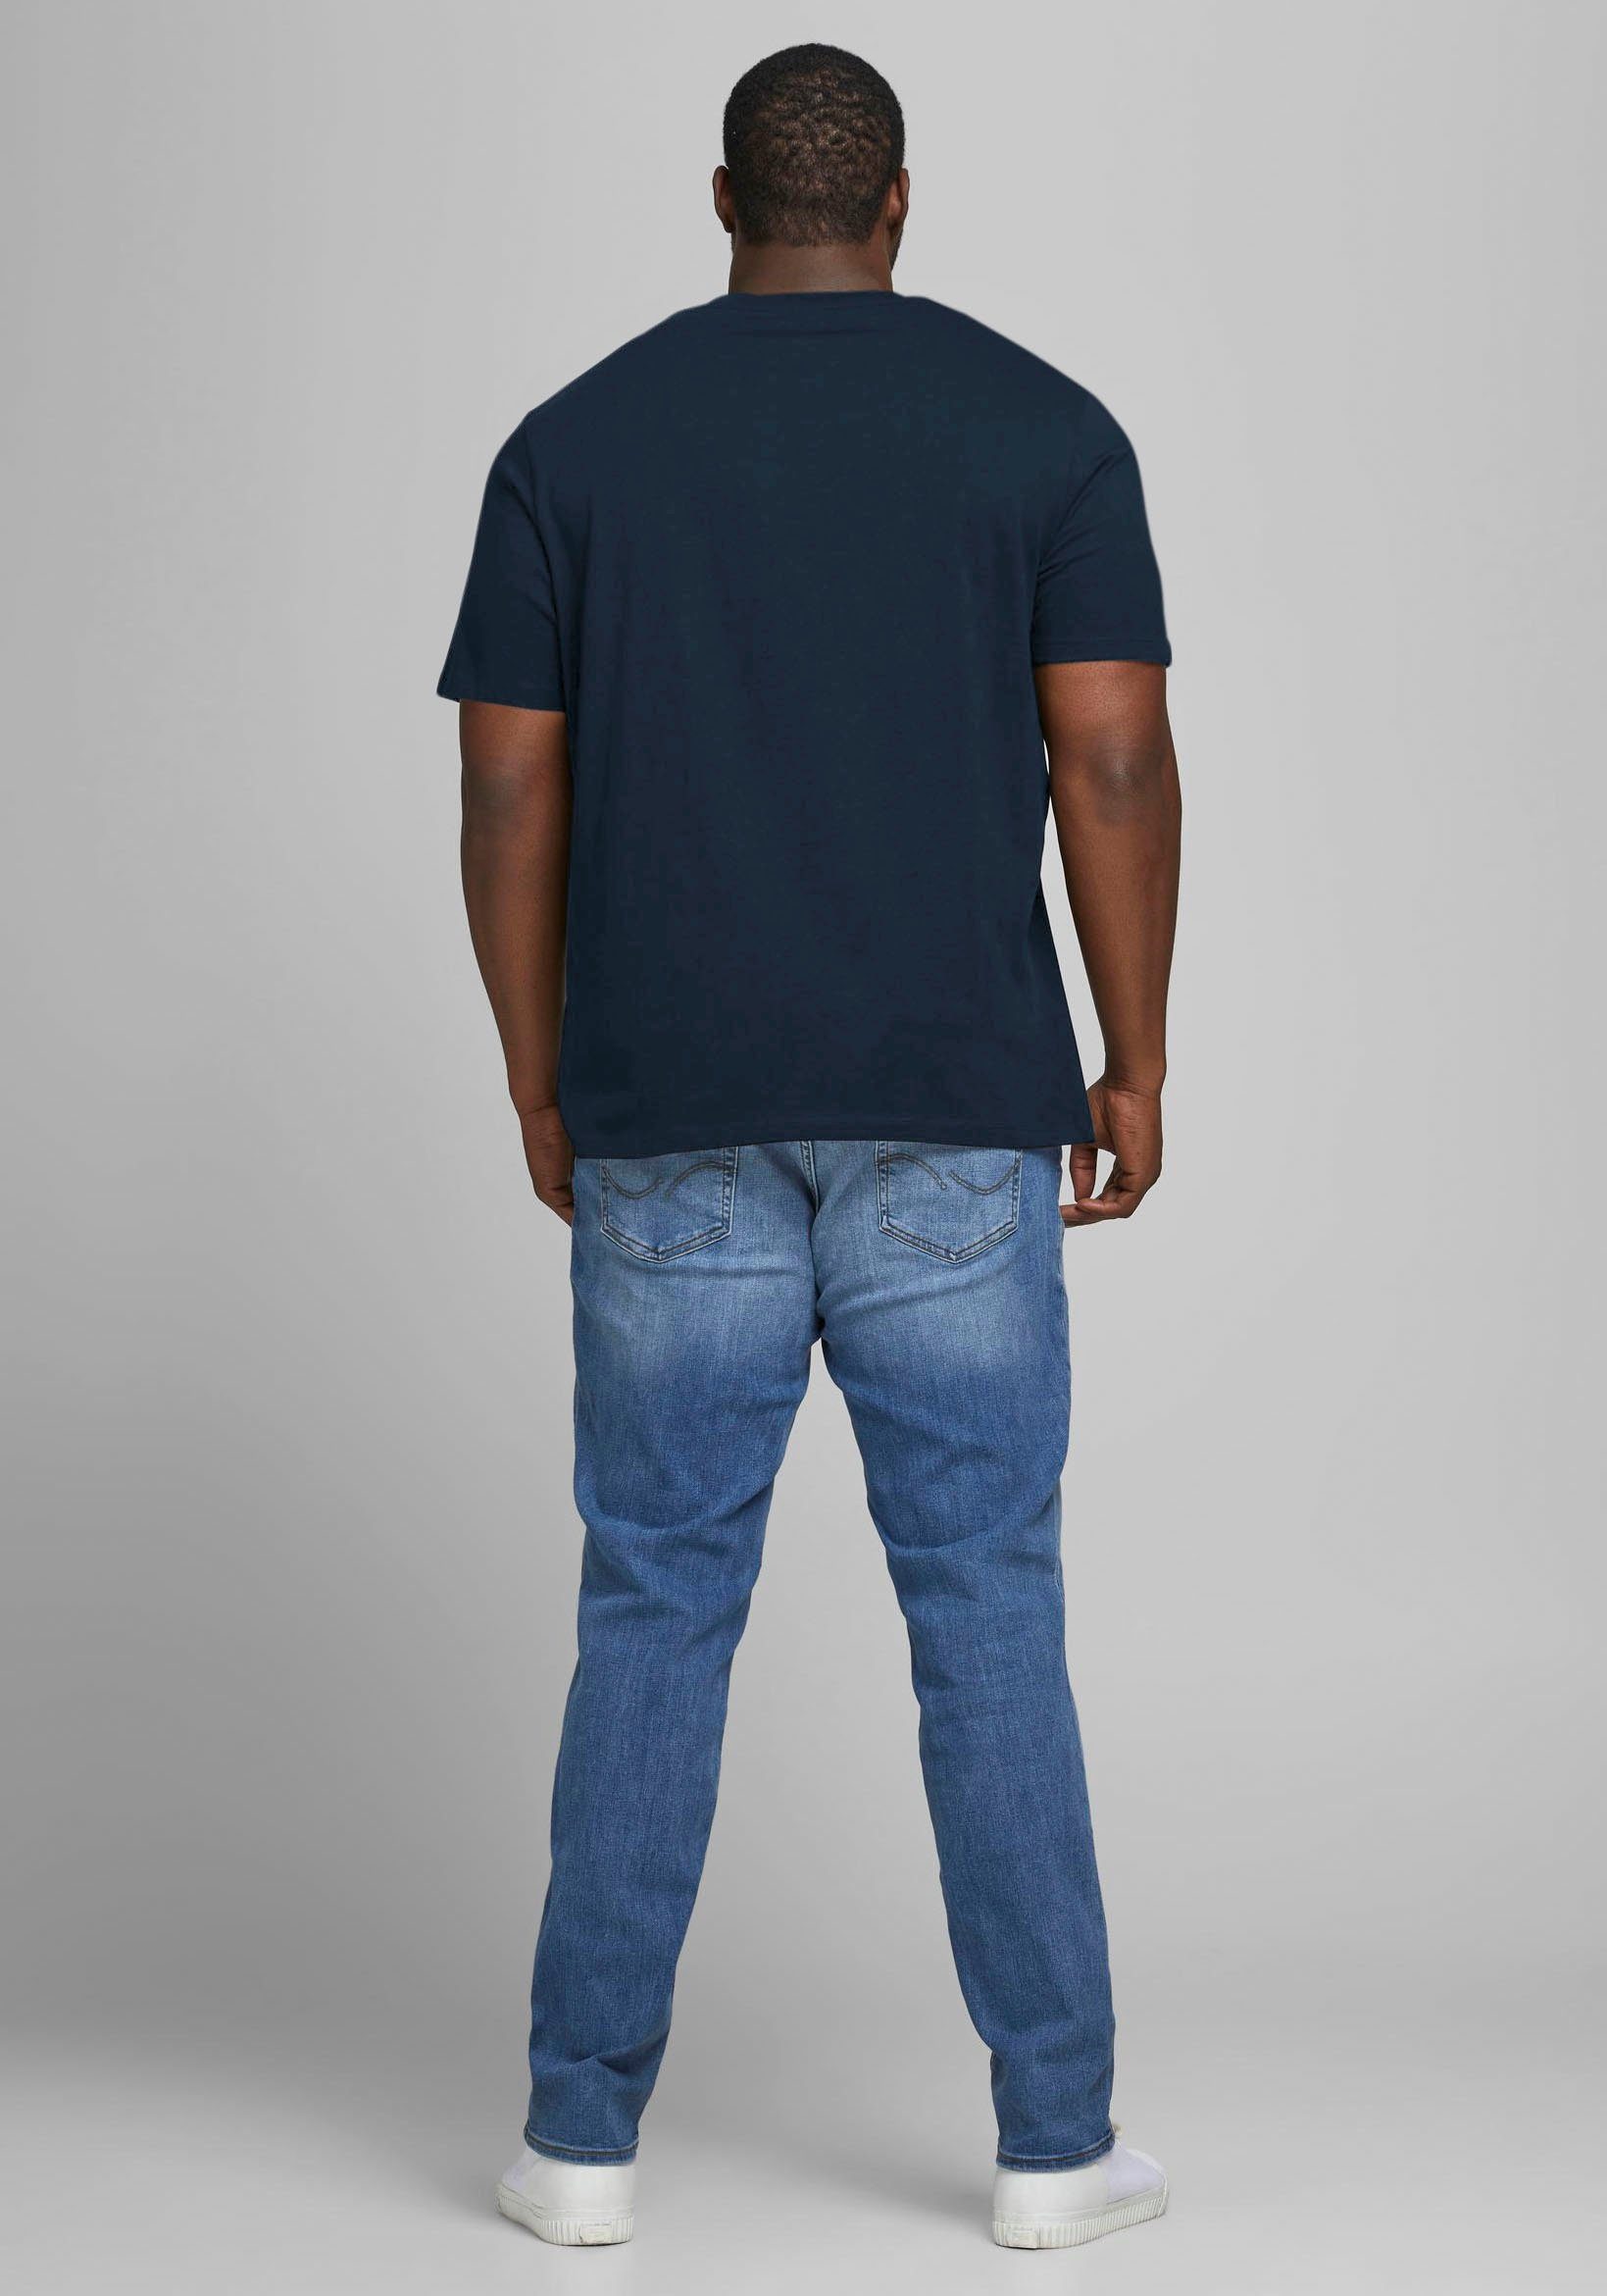 Jack & navy PlusSize Jones T-Shirt TEE CORP bis 6XL LOGO Größe